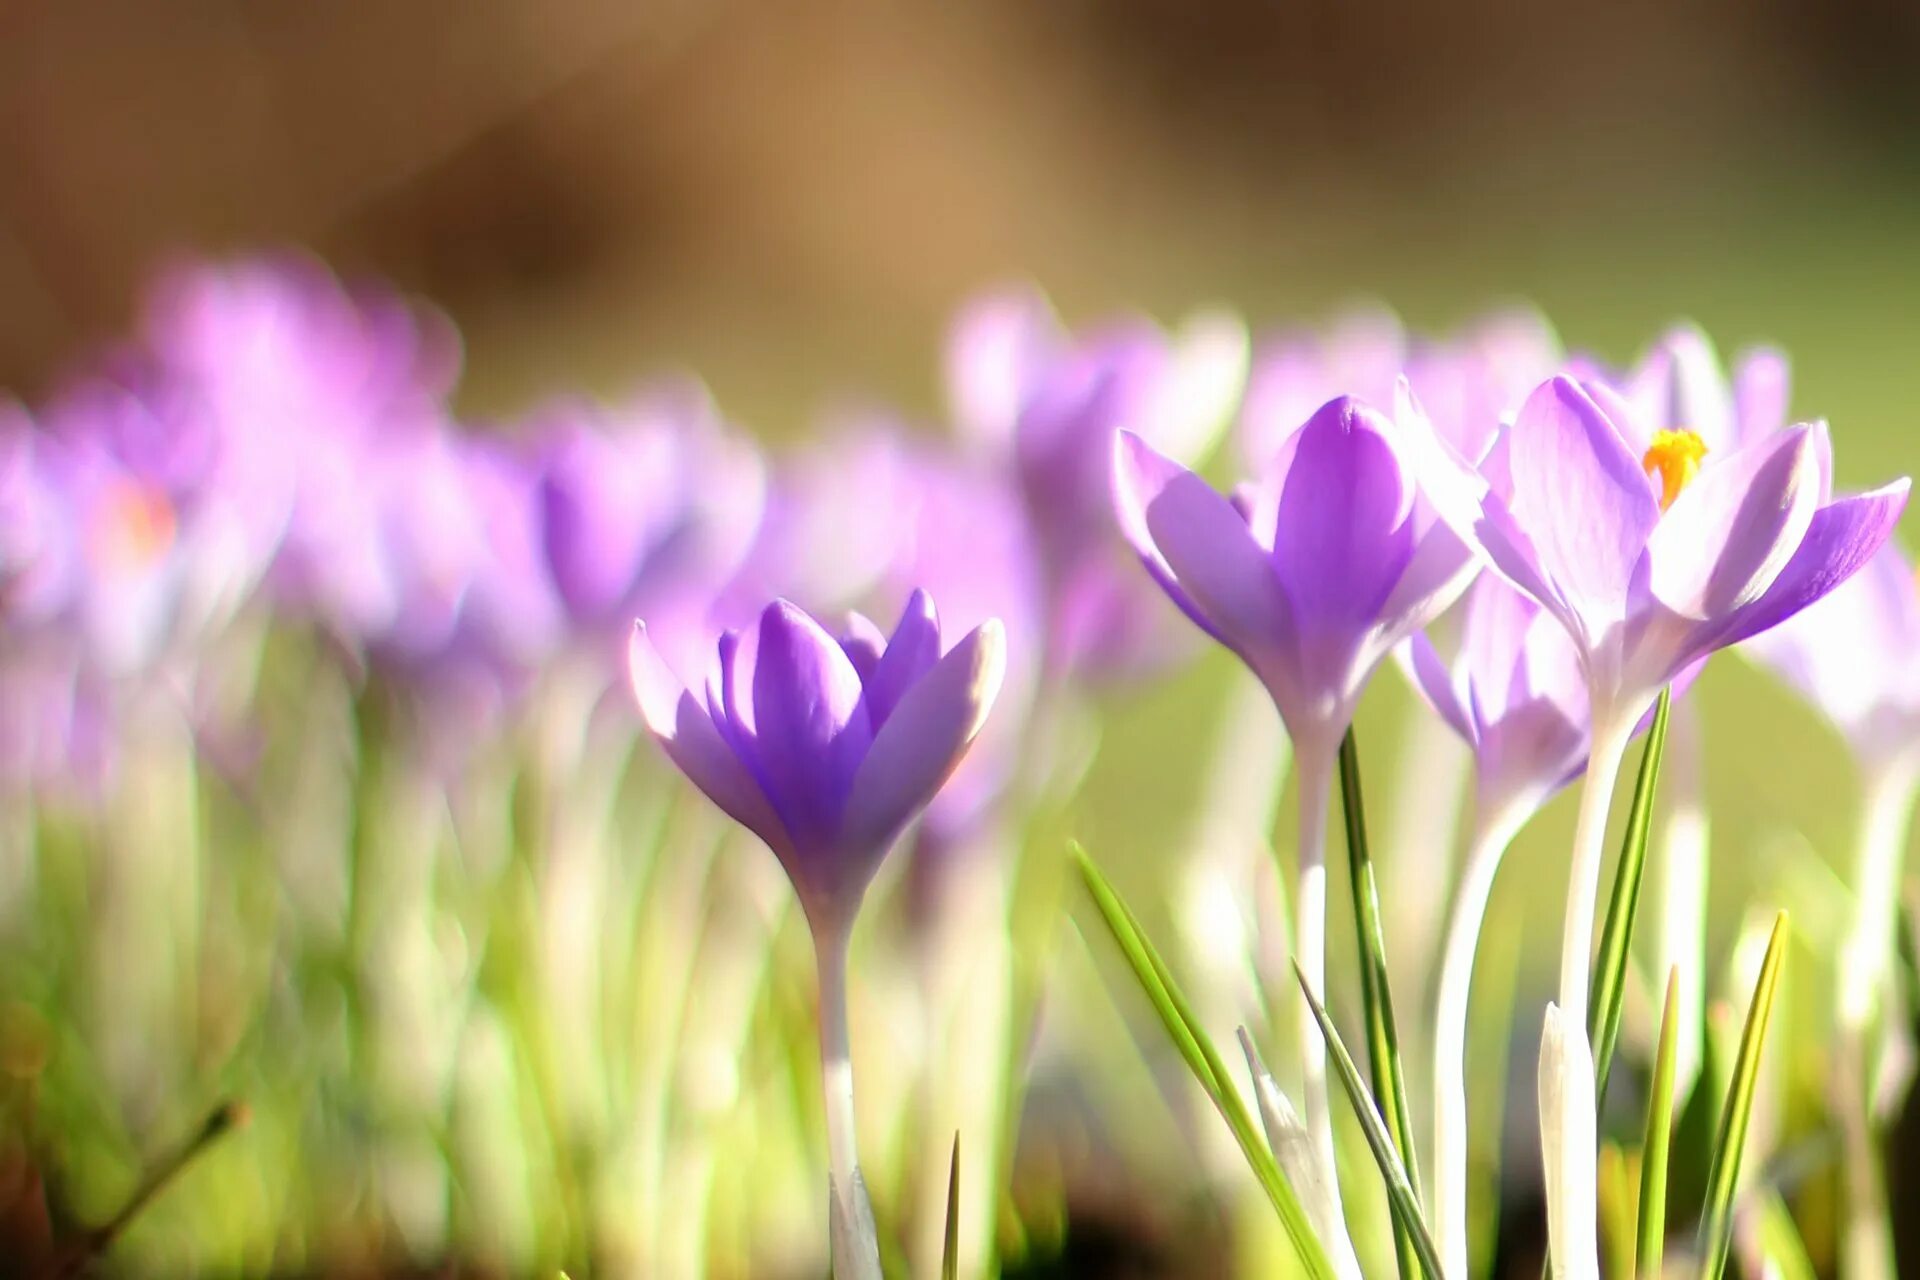 Весенние картинки на экран компьютера. Крокус фиолетовый первоцвет. Первоцветы (подснежники, крокусы, гиацинты).. Весенние цветы первоцветы Крокус. Весенние первоцветы фиолетовые.